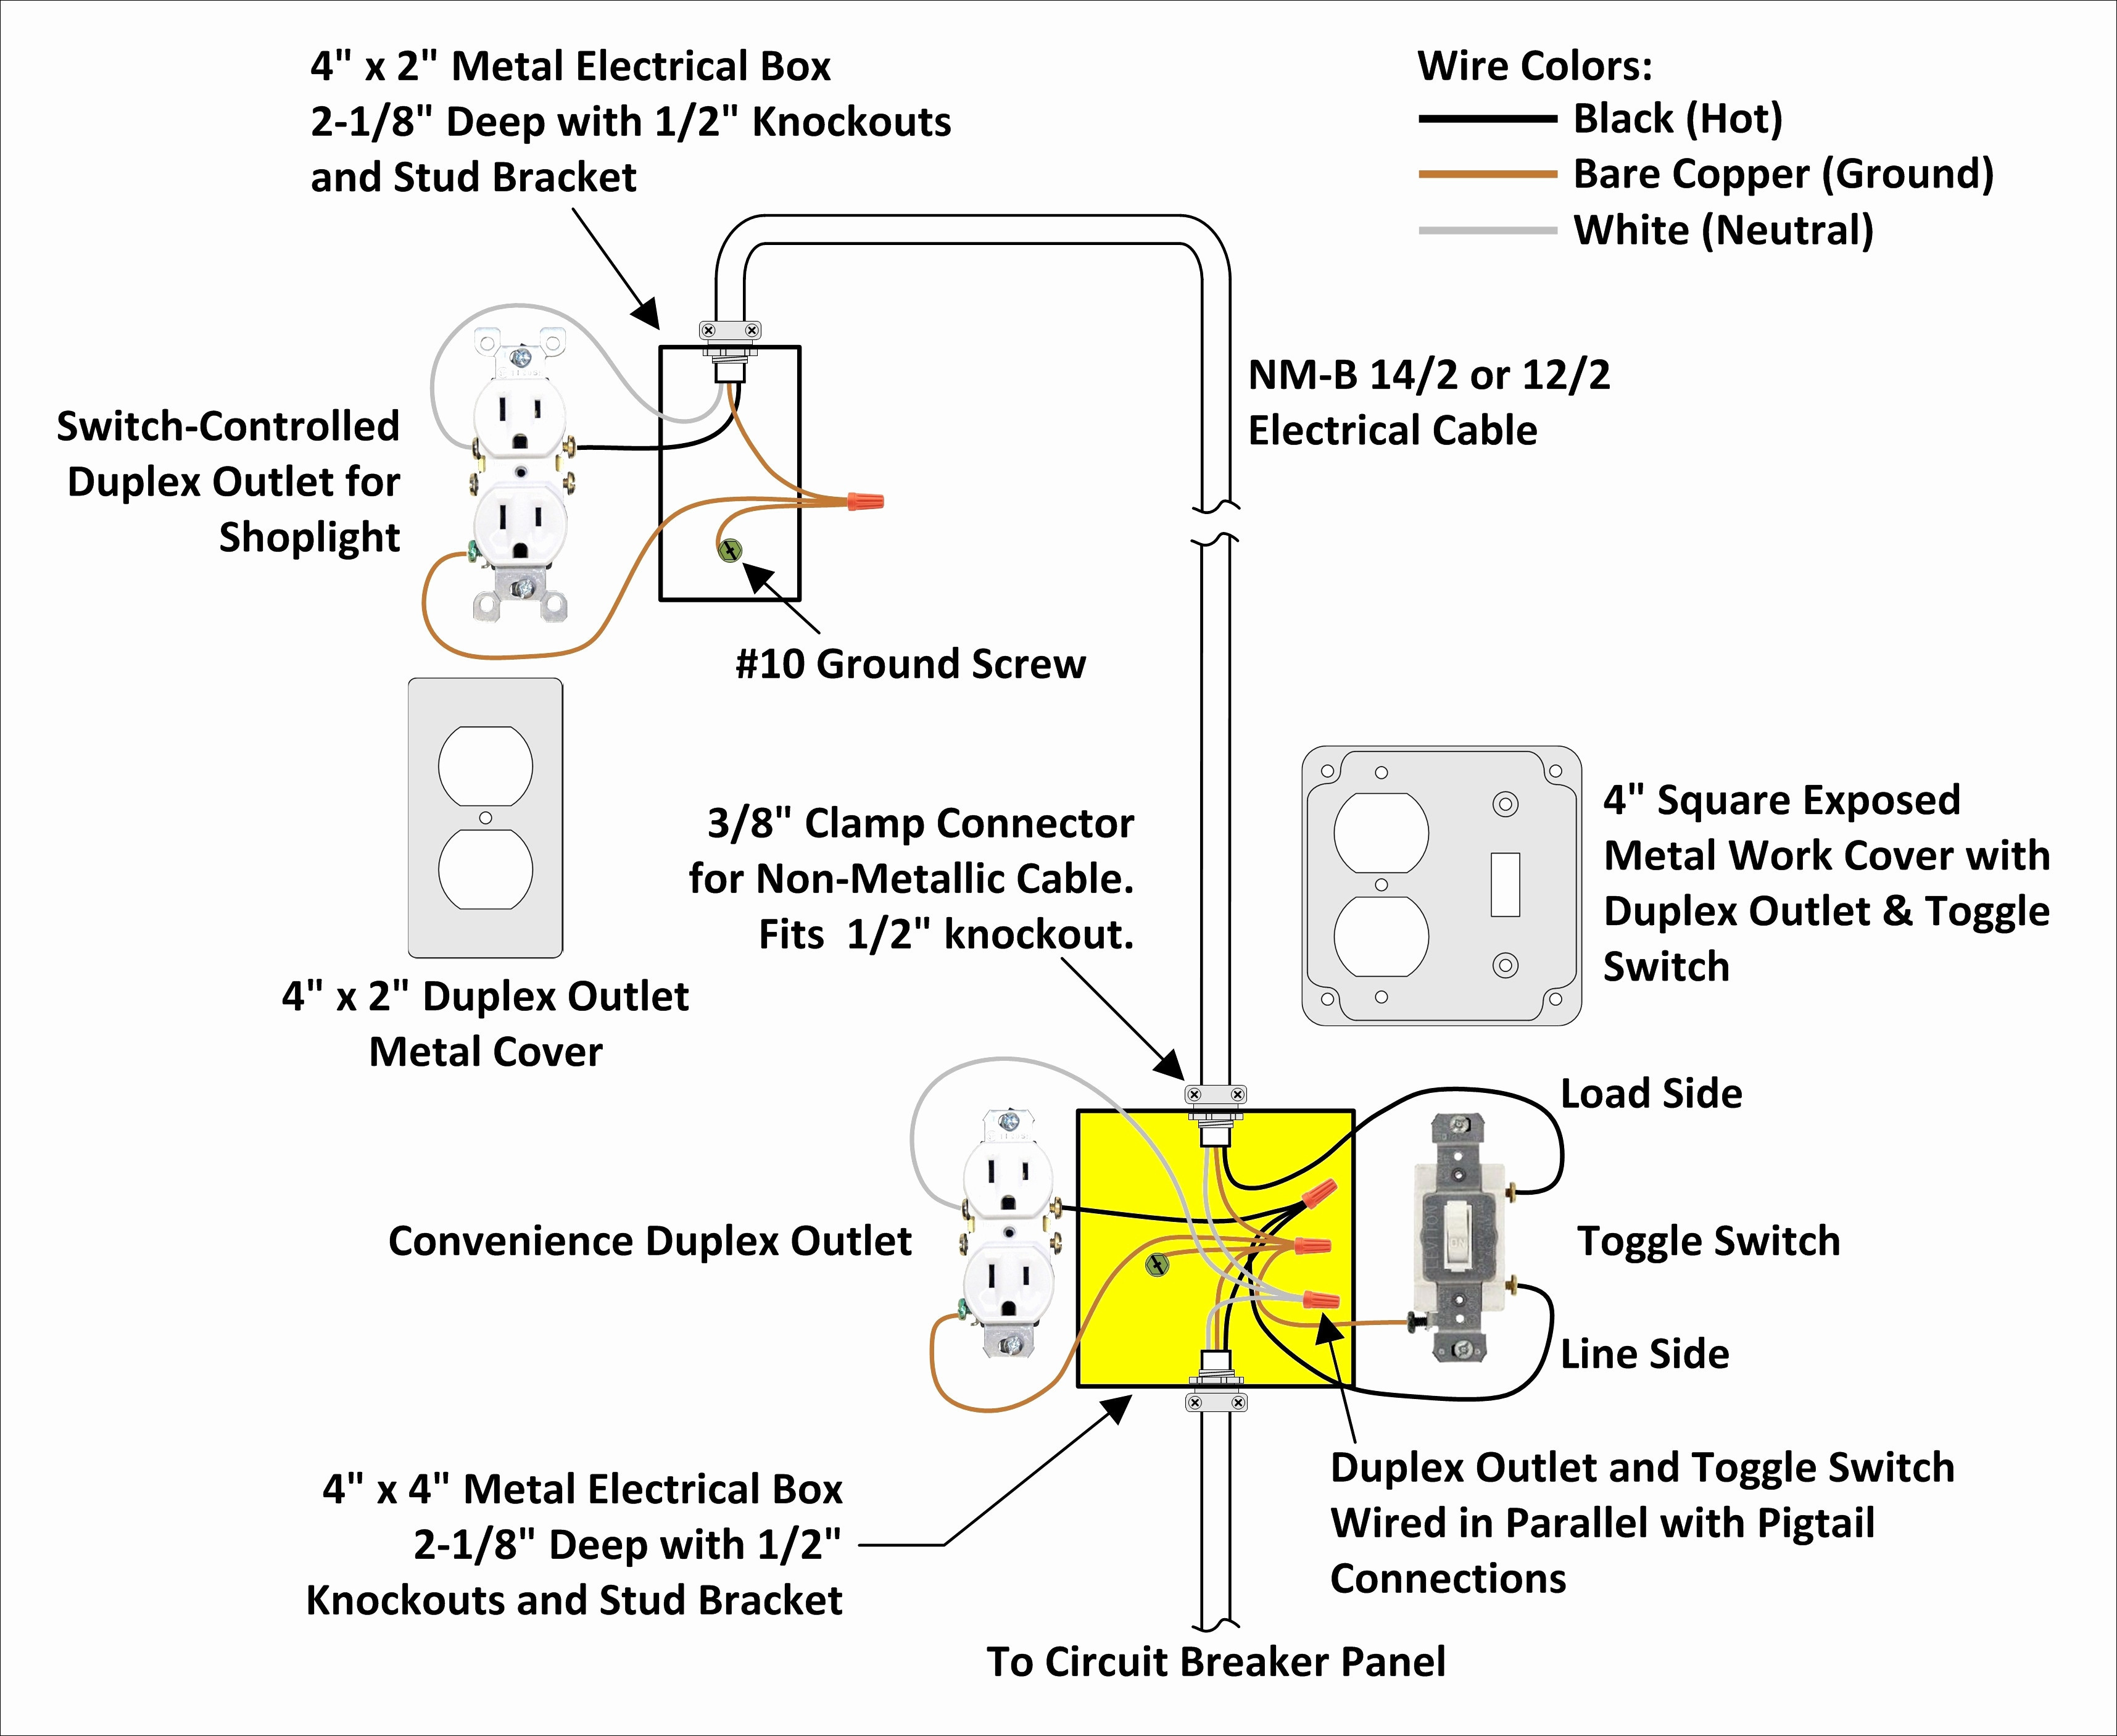 30 Amp To 50 Amp Adapter Wiring Diagram | Wiring Diagram - 50 Amp Plug Wiring Diagram